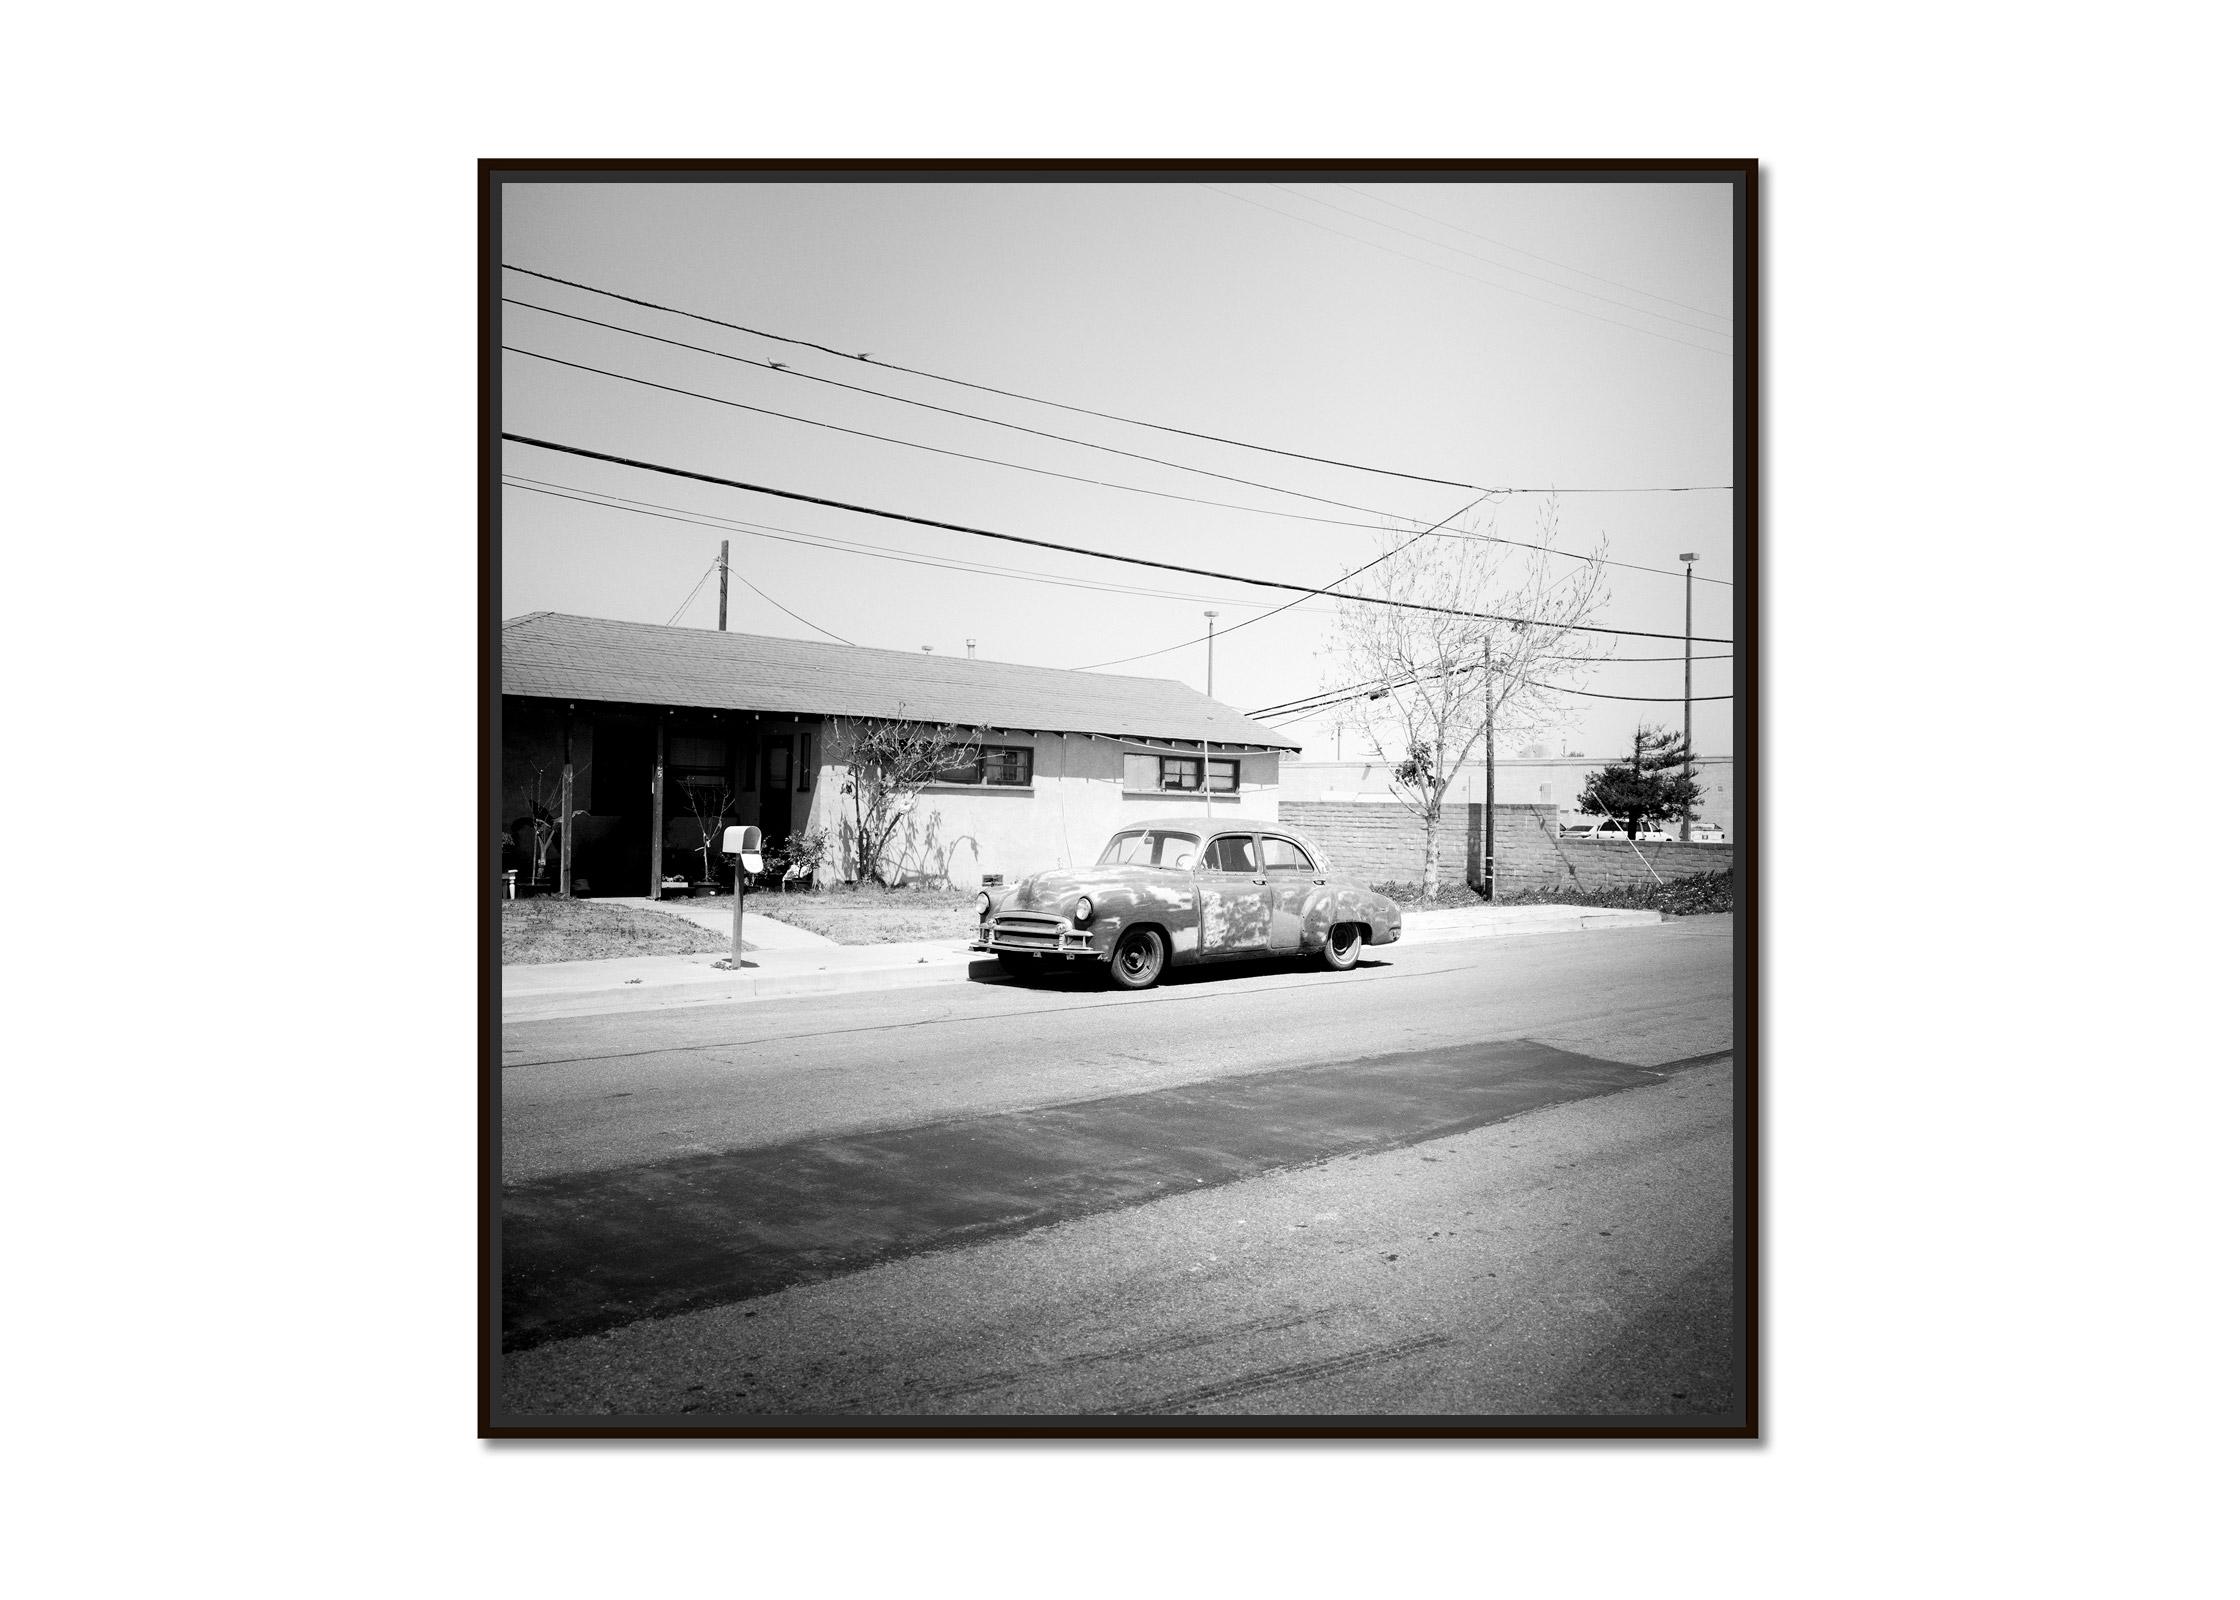 Haus, Classic Car, Arizona, USA, Schwarz-Weiß-Landschaftsfotografie-Kunstdruck – Photograph von Gerald Berghammer